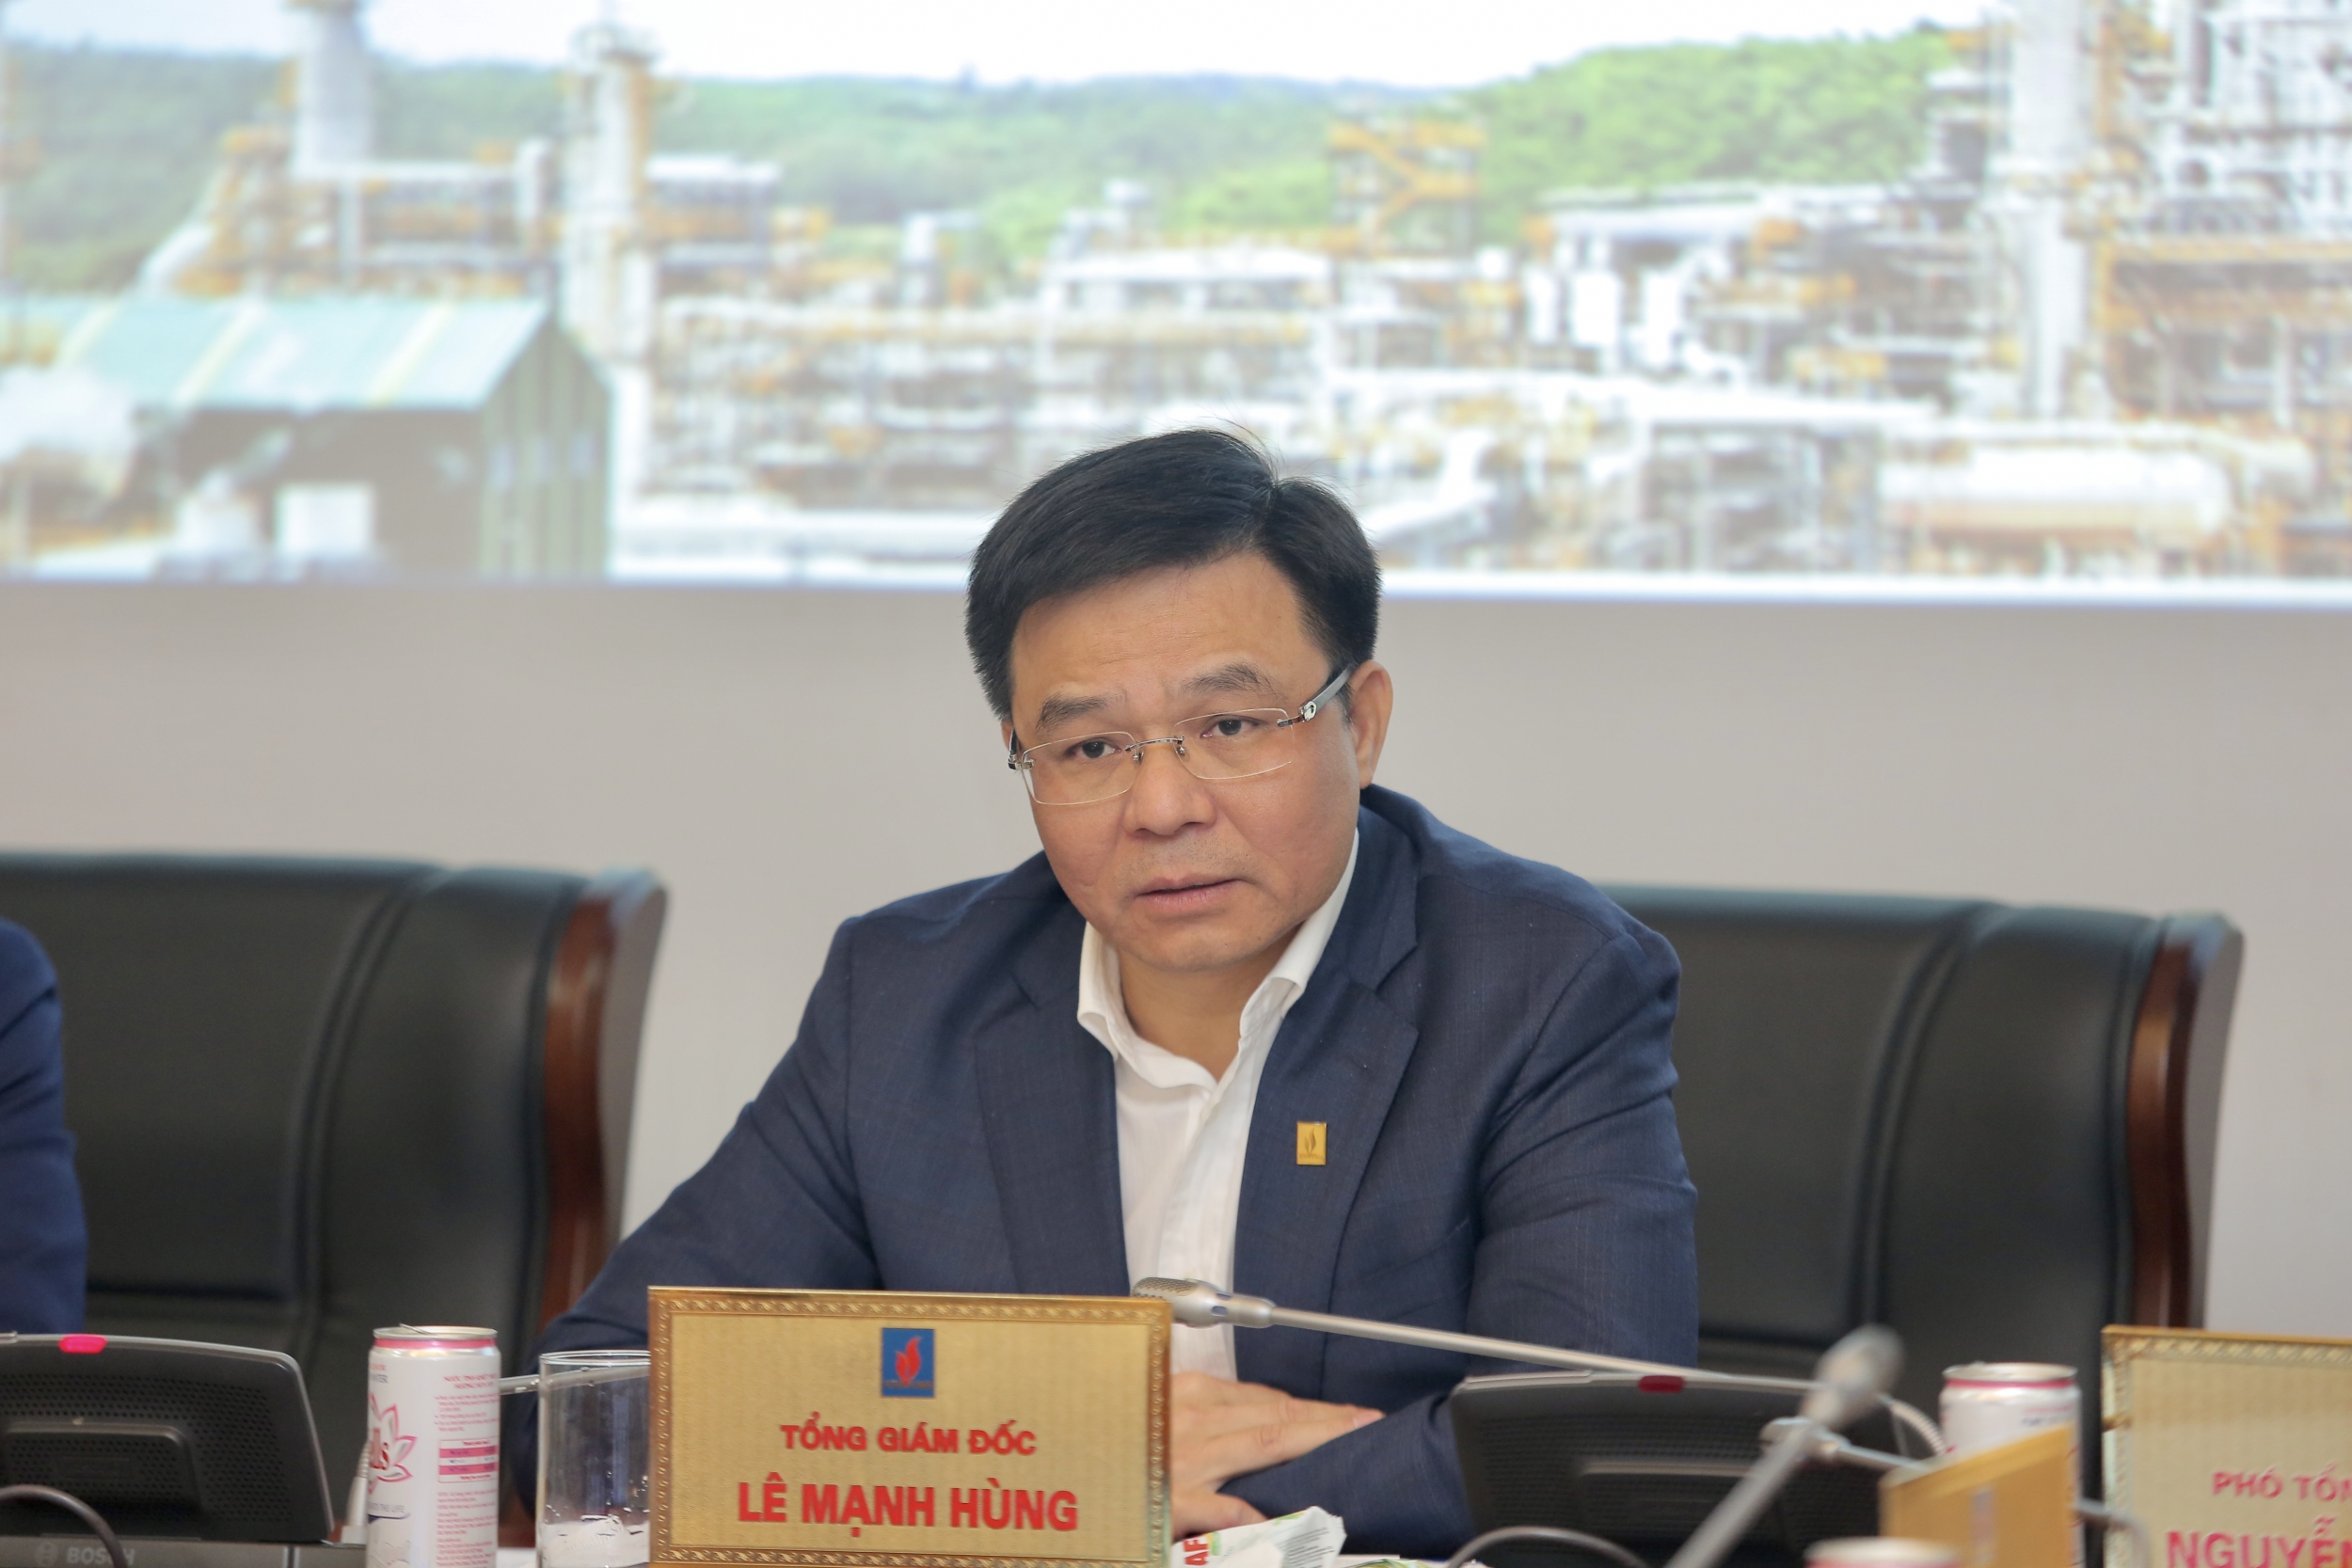 Tổng giám đốc Petrovietnam Lê Mạnh Hùng phát biểu tại buổi giao ban